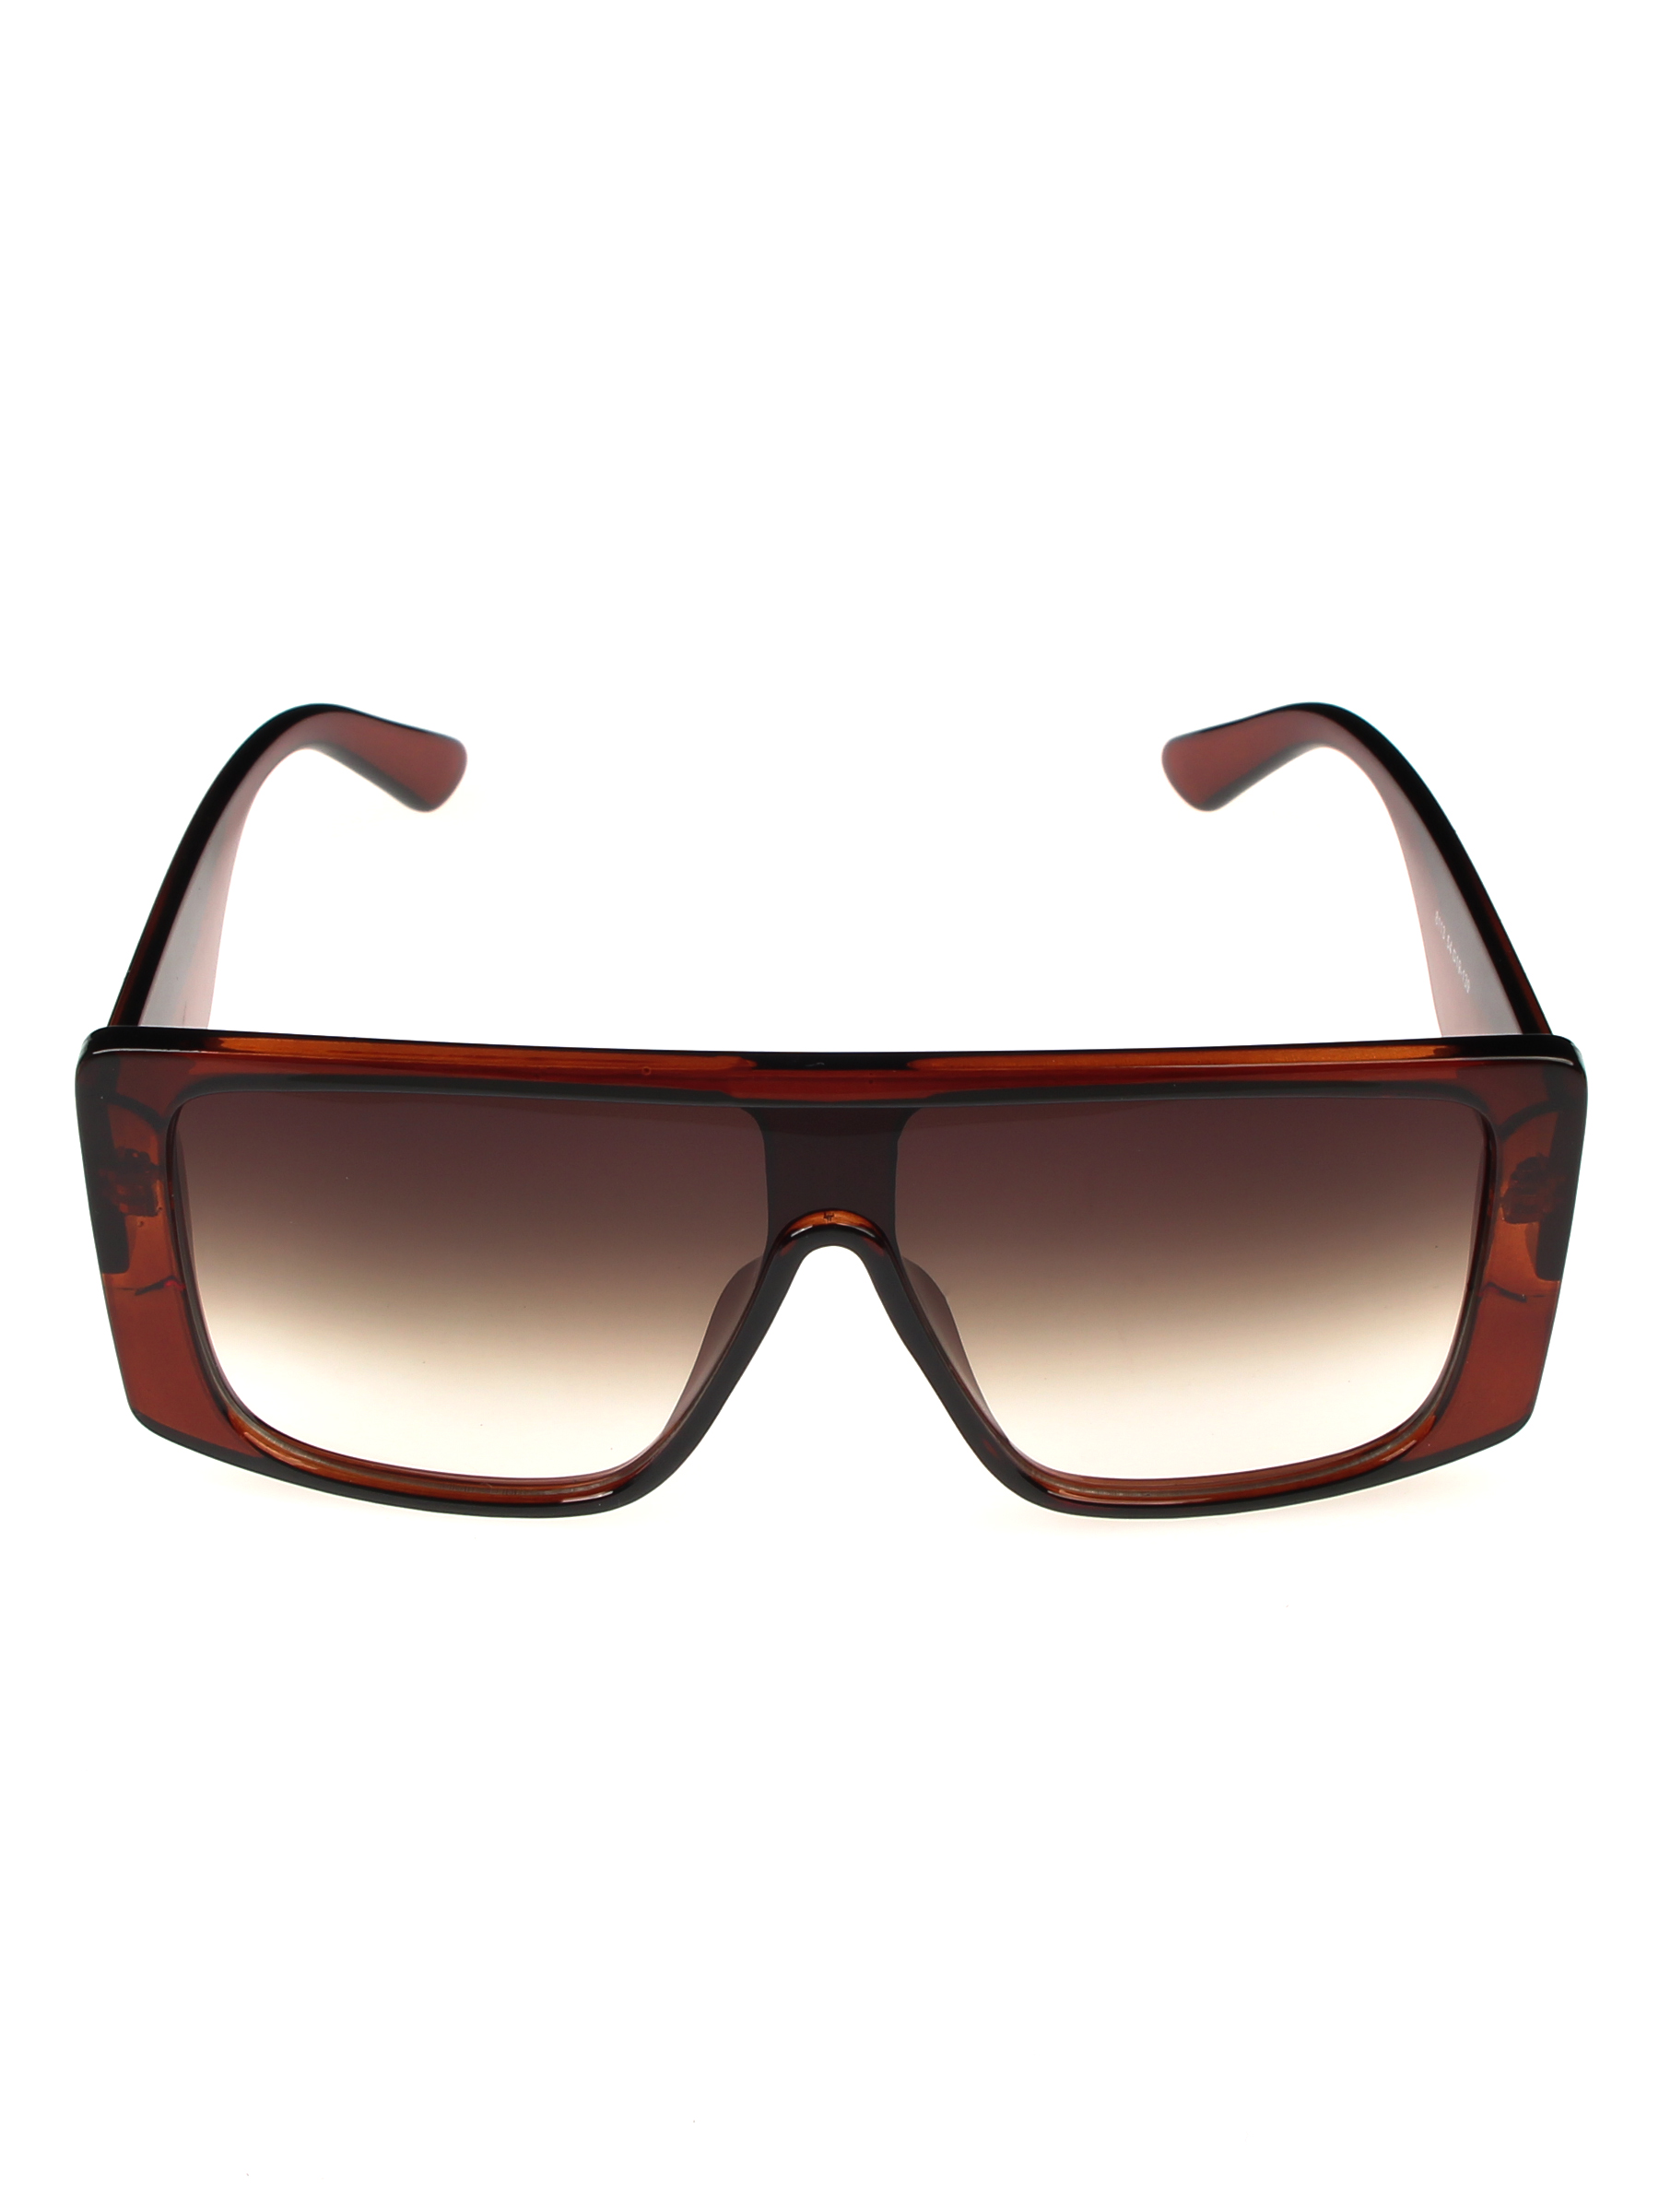 Солнцезащитные очки женские Pretty Mania NDP027 коричневые